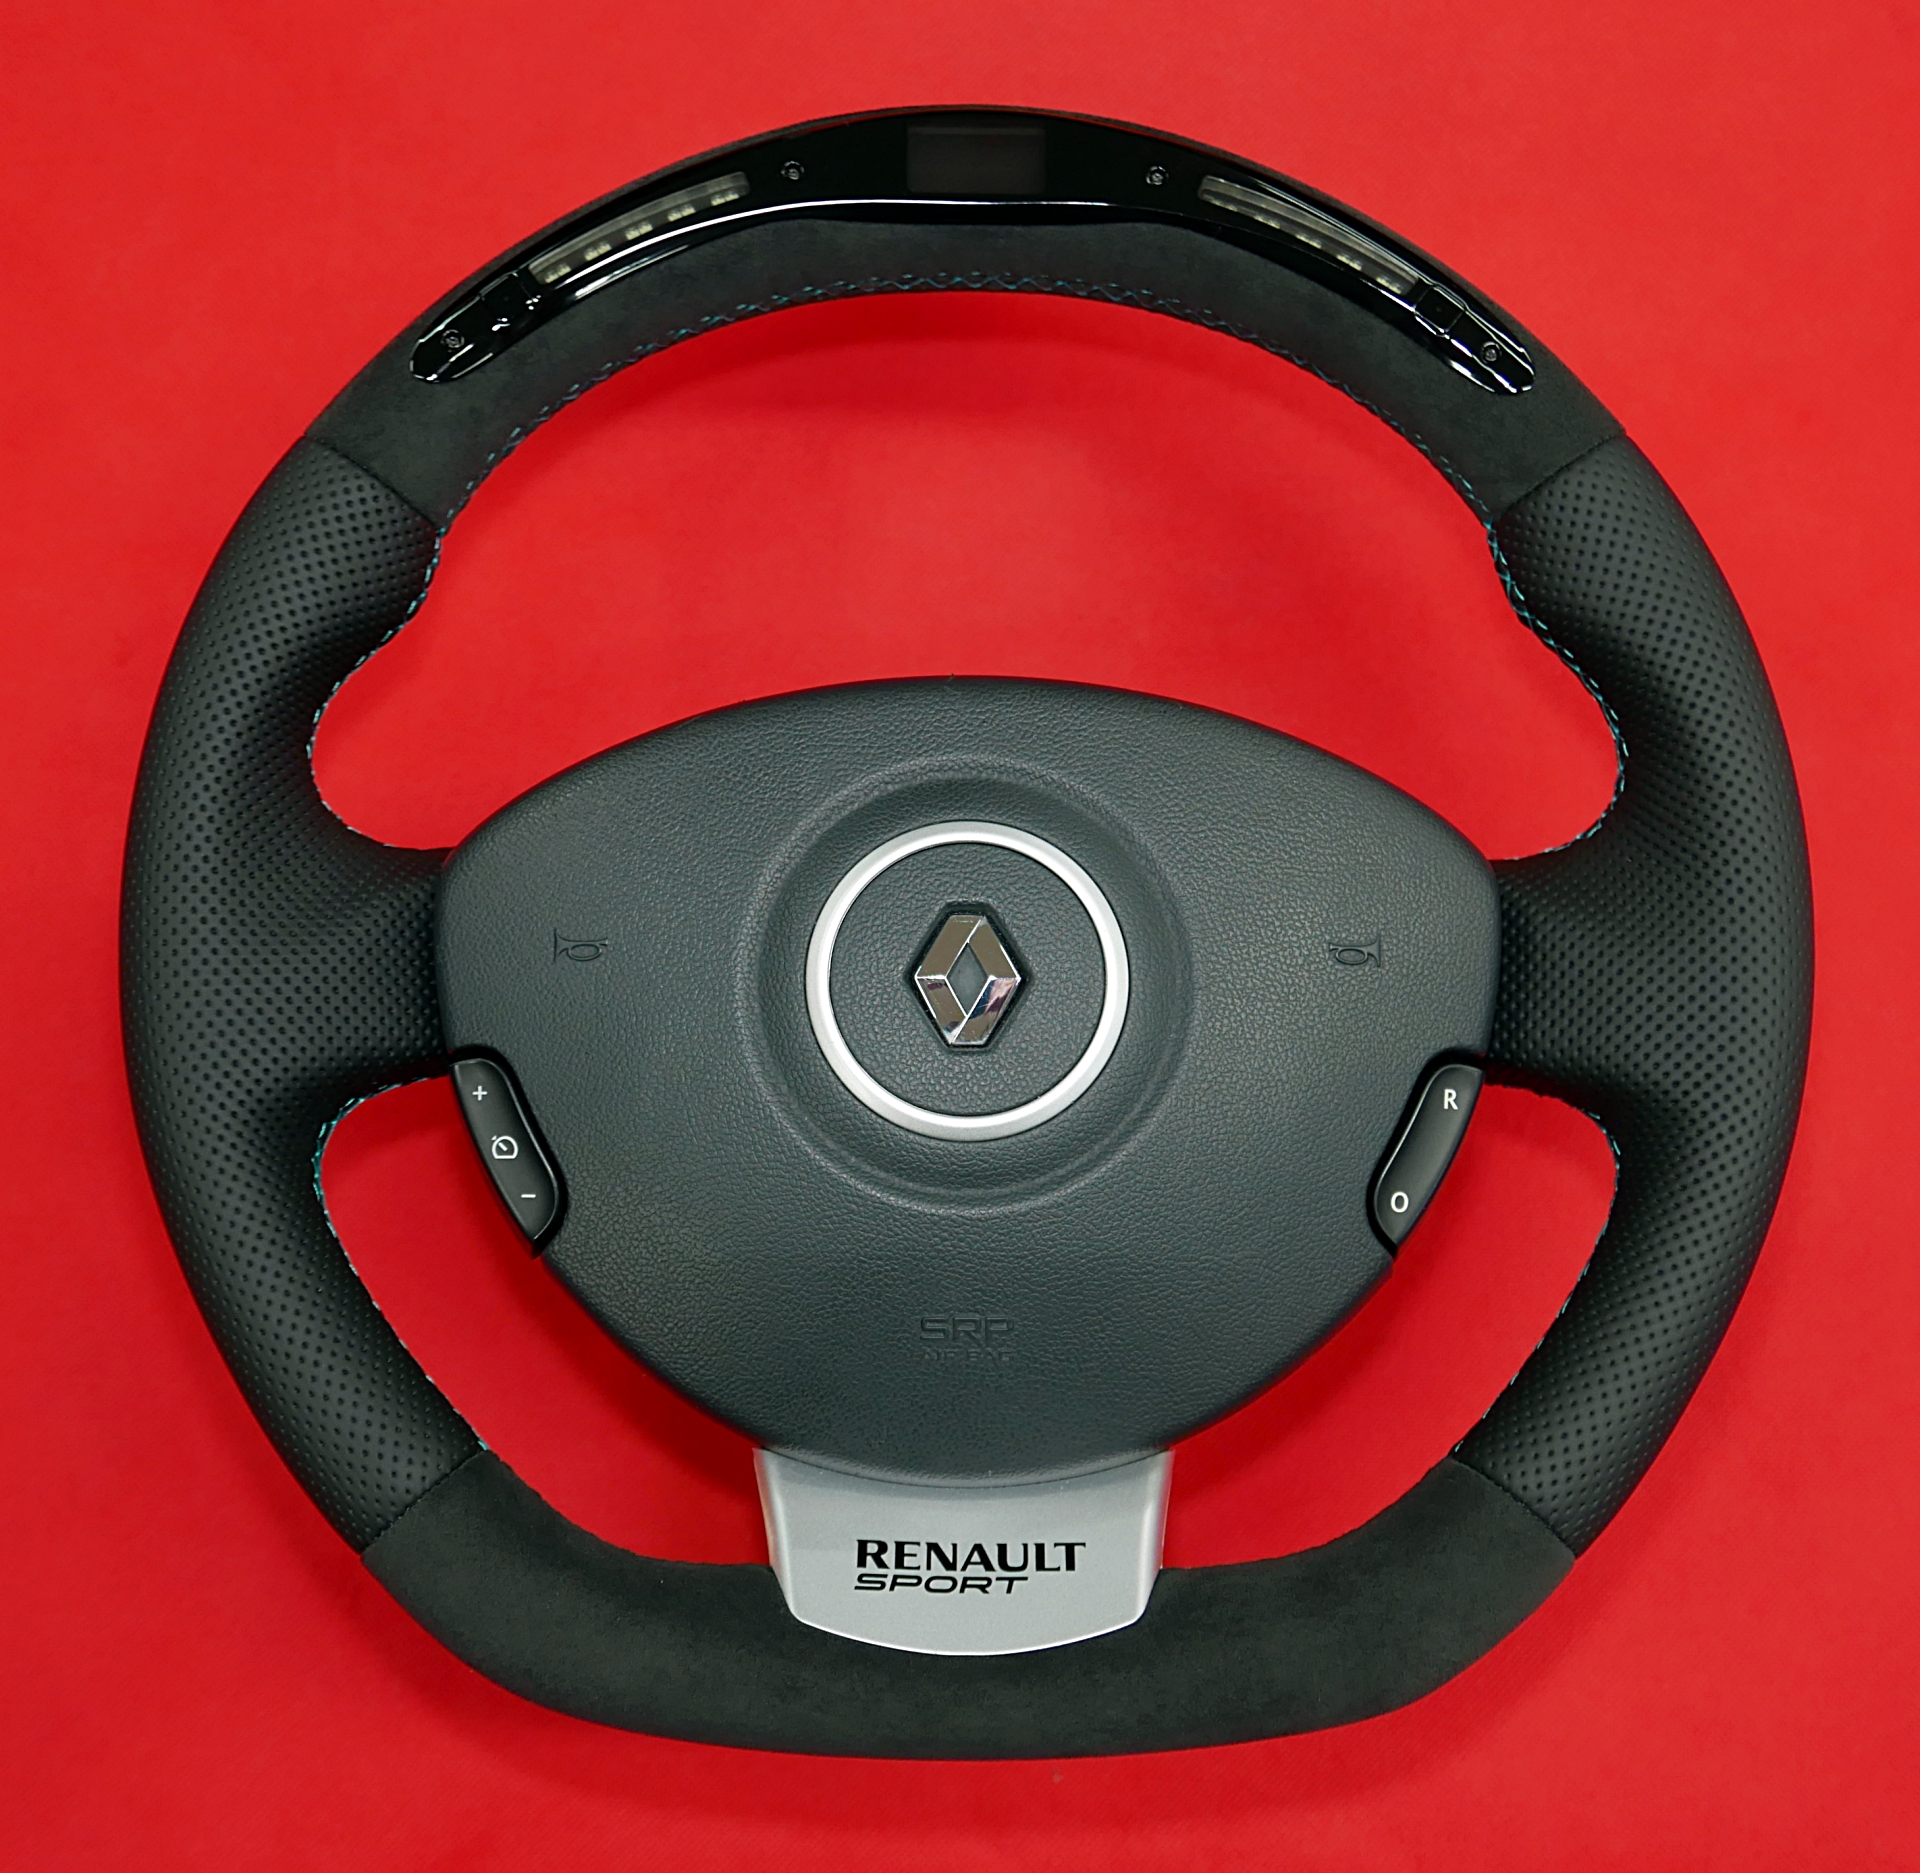 Renault custom steering wheel with LED LCD display